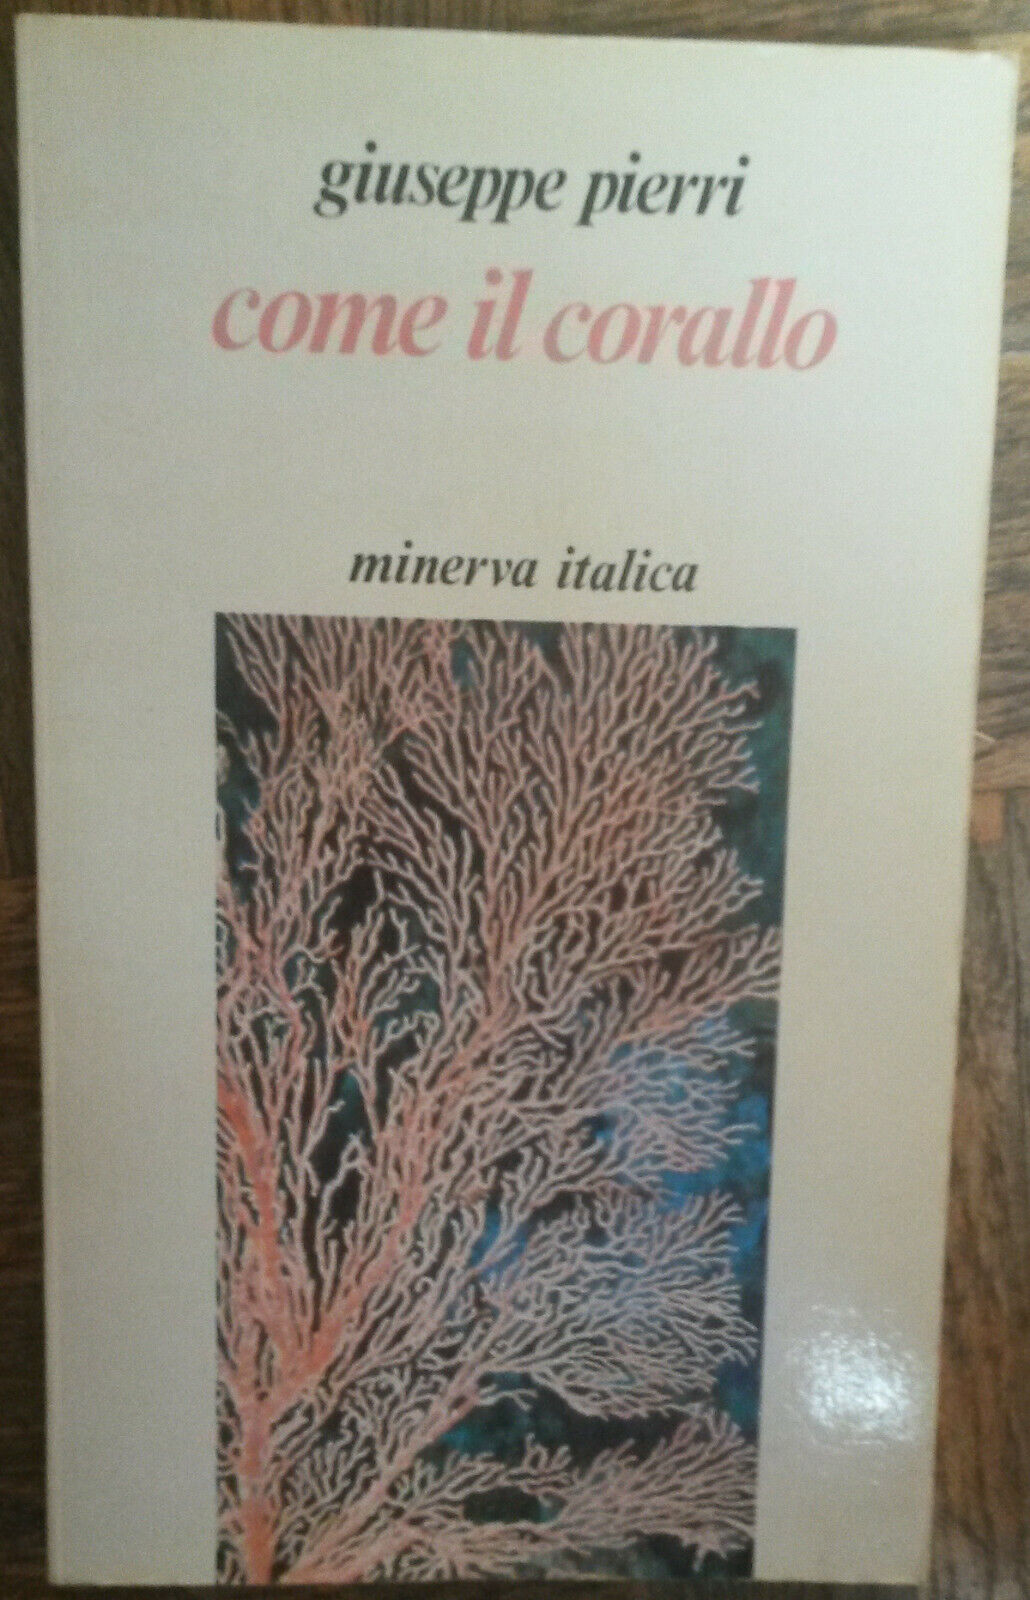 Come il corallo - Giuseppe Pierri - Minerva Italica,1987 - R